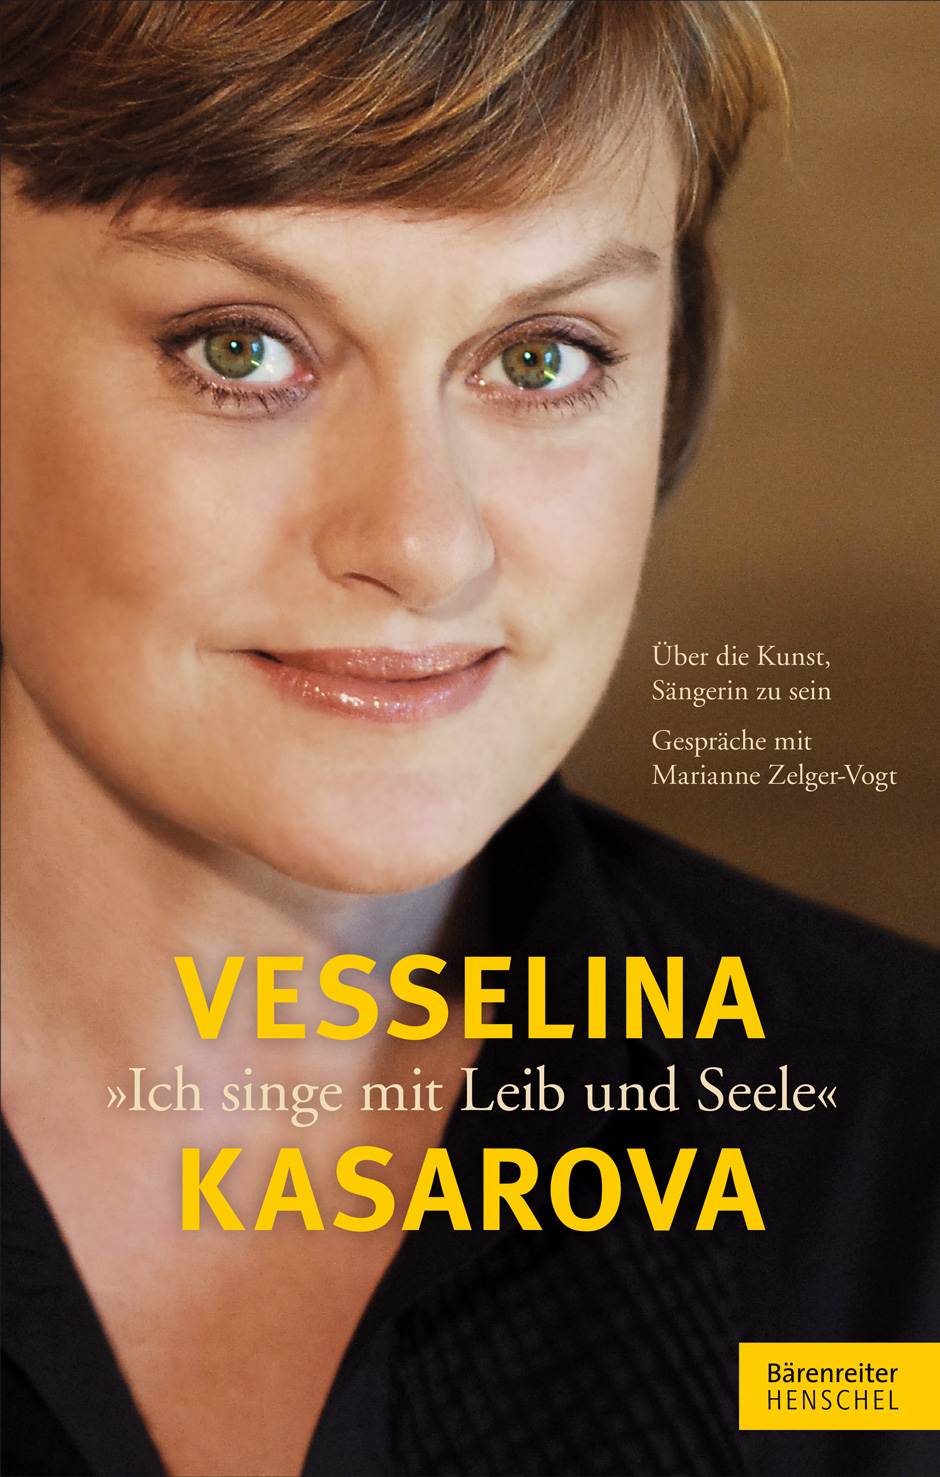 Vesselina Kasarova. "Ich singe mit Leib und Seele"